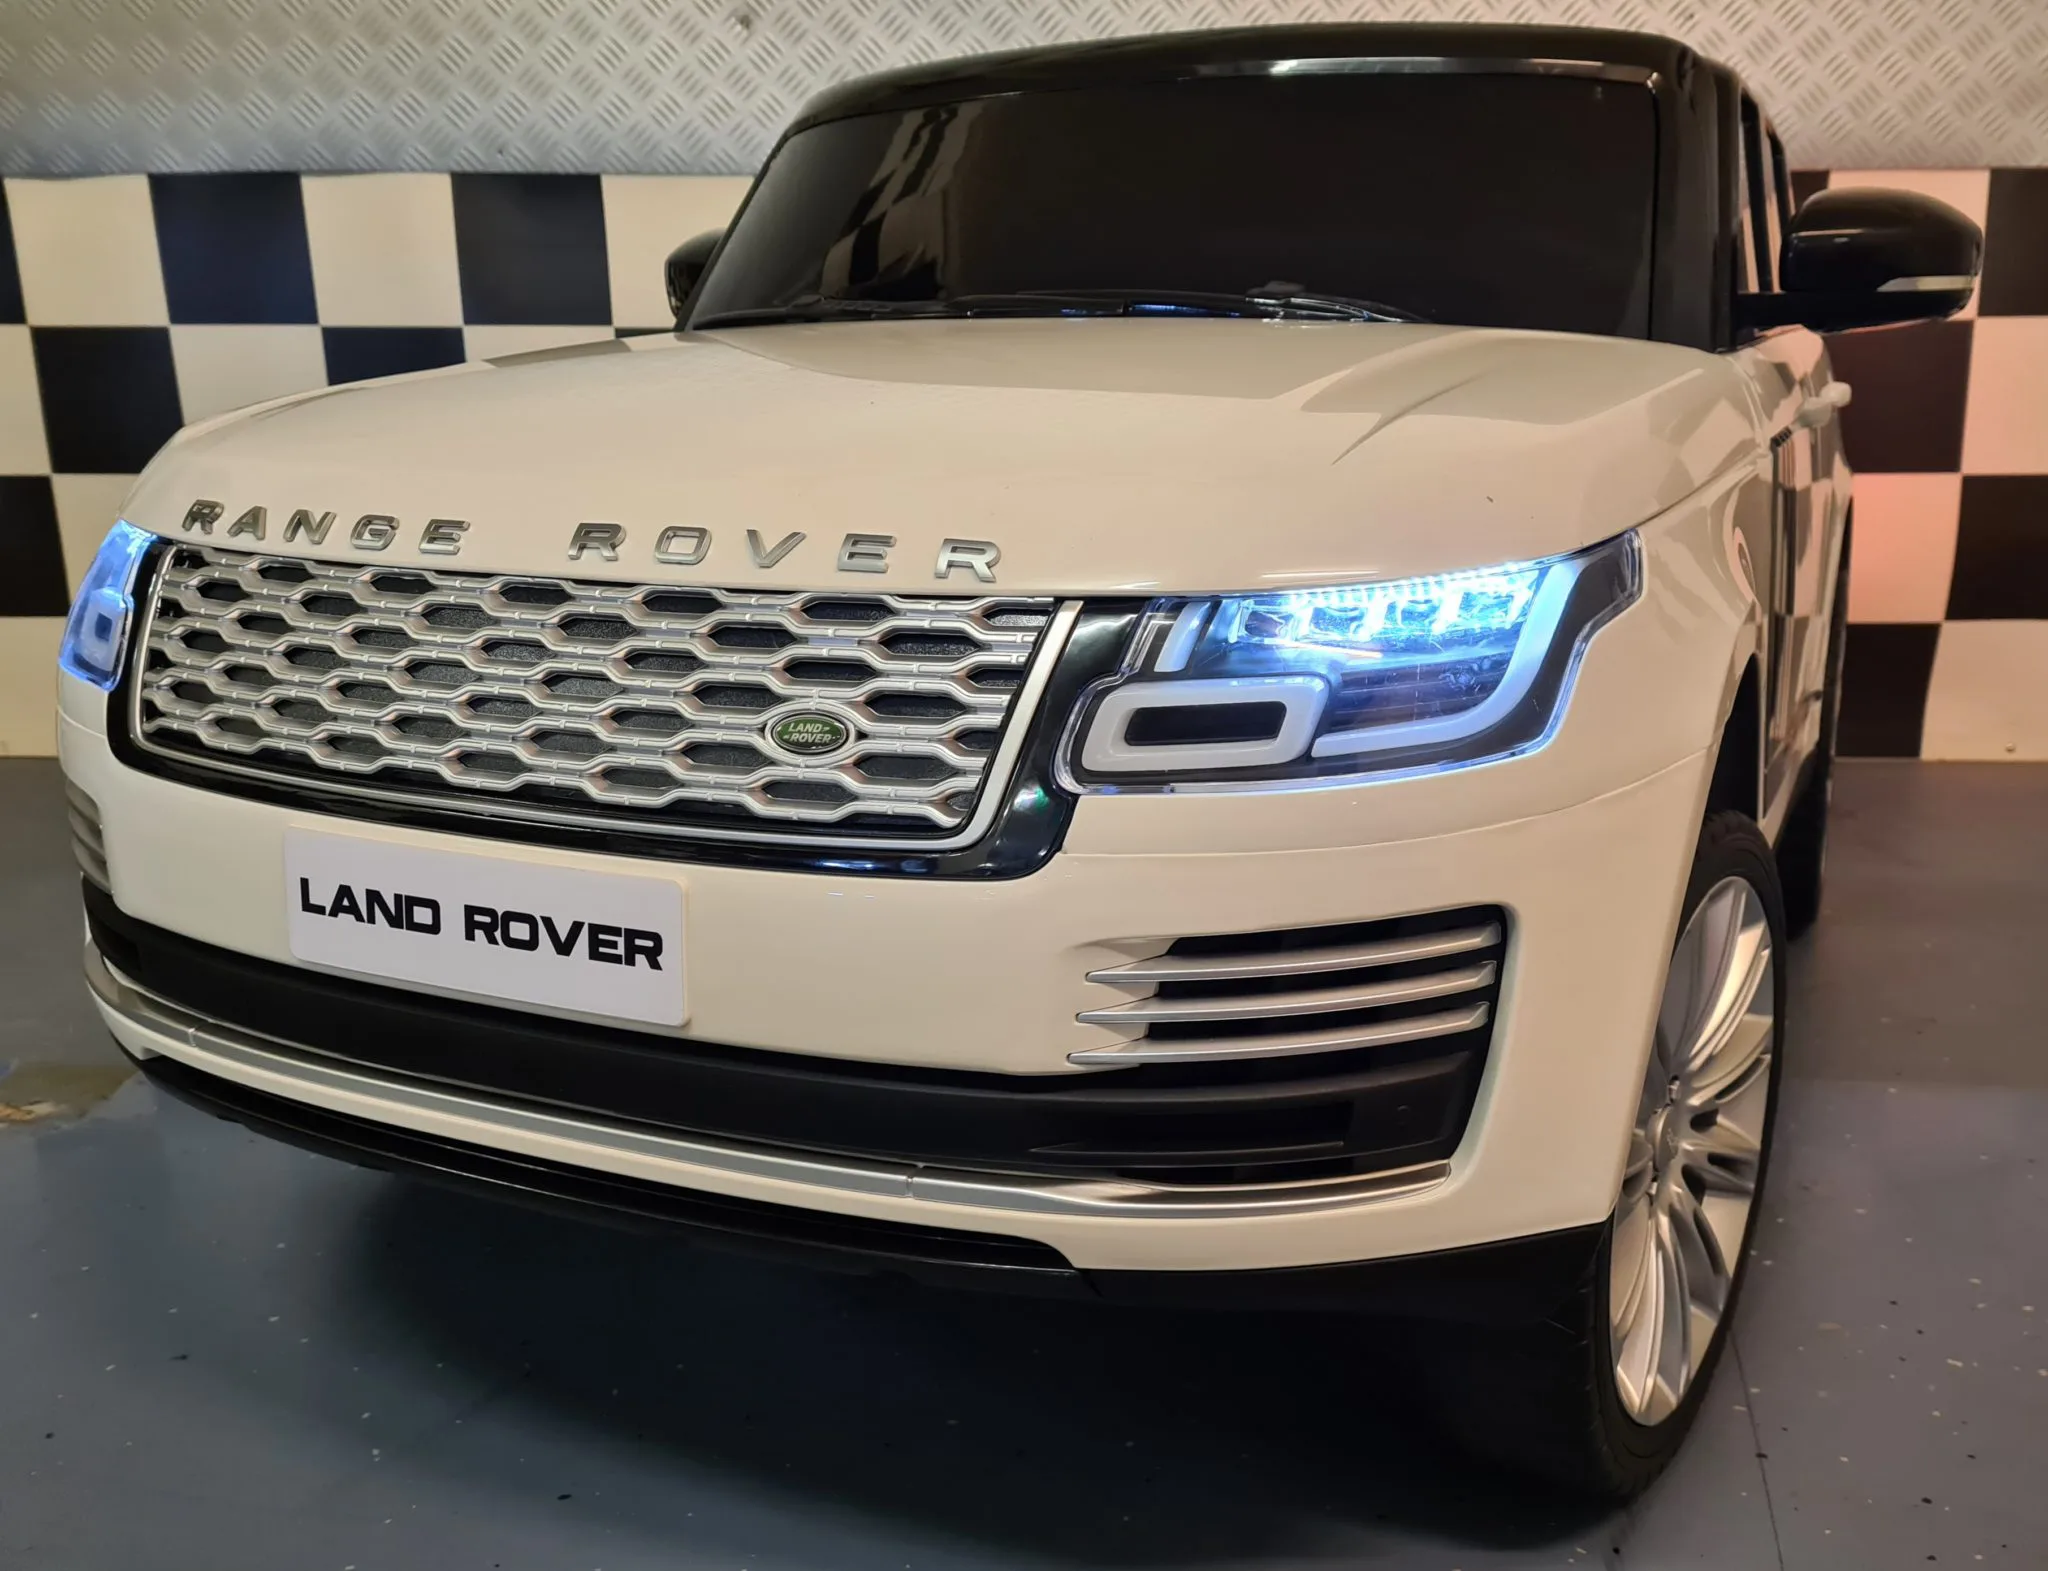 Rang Rover Land Rover - Elektrische Kinderauto